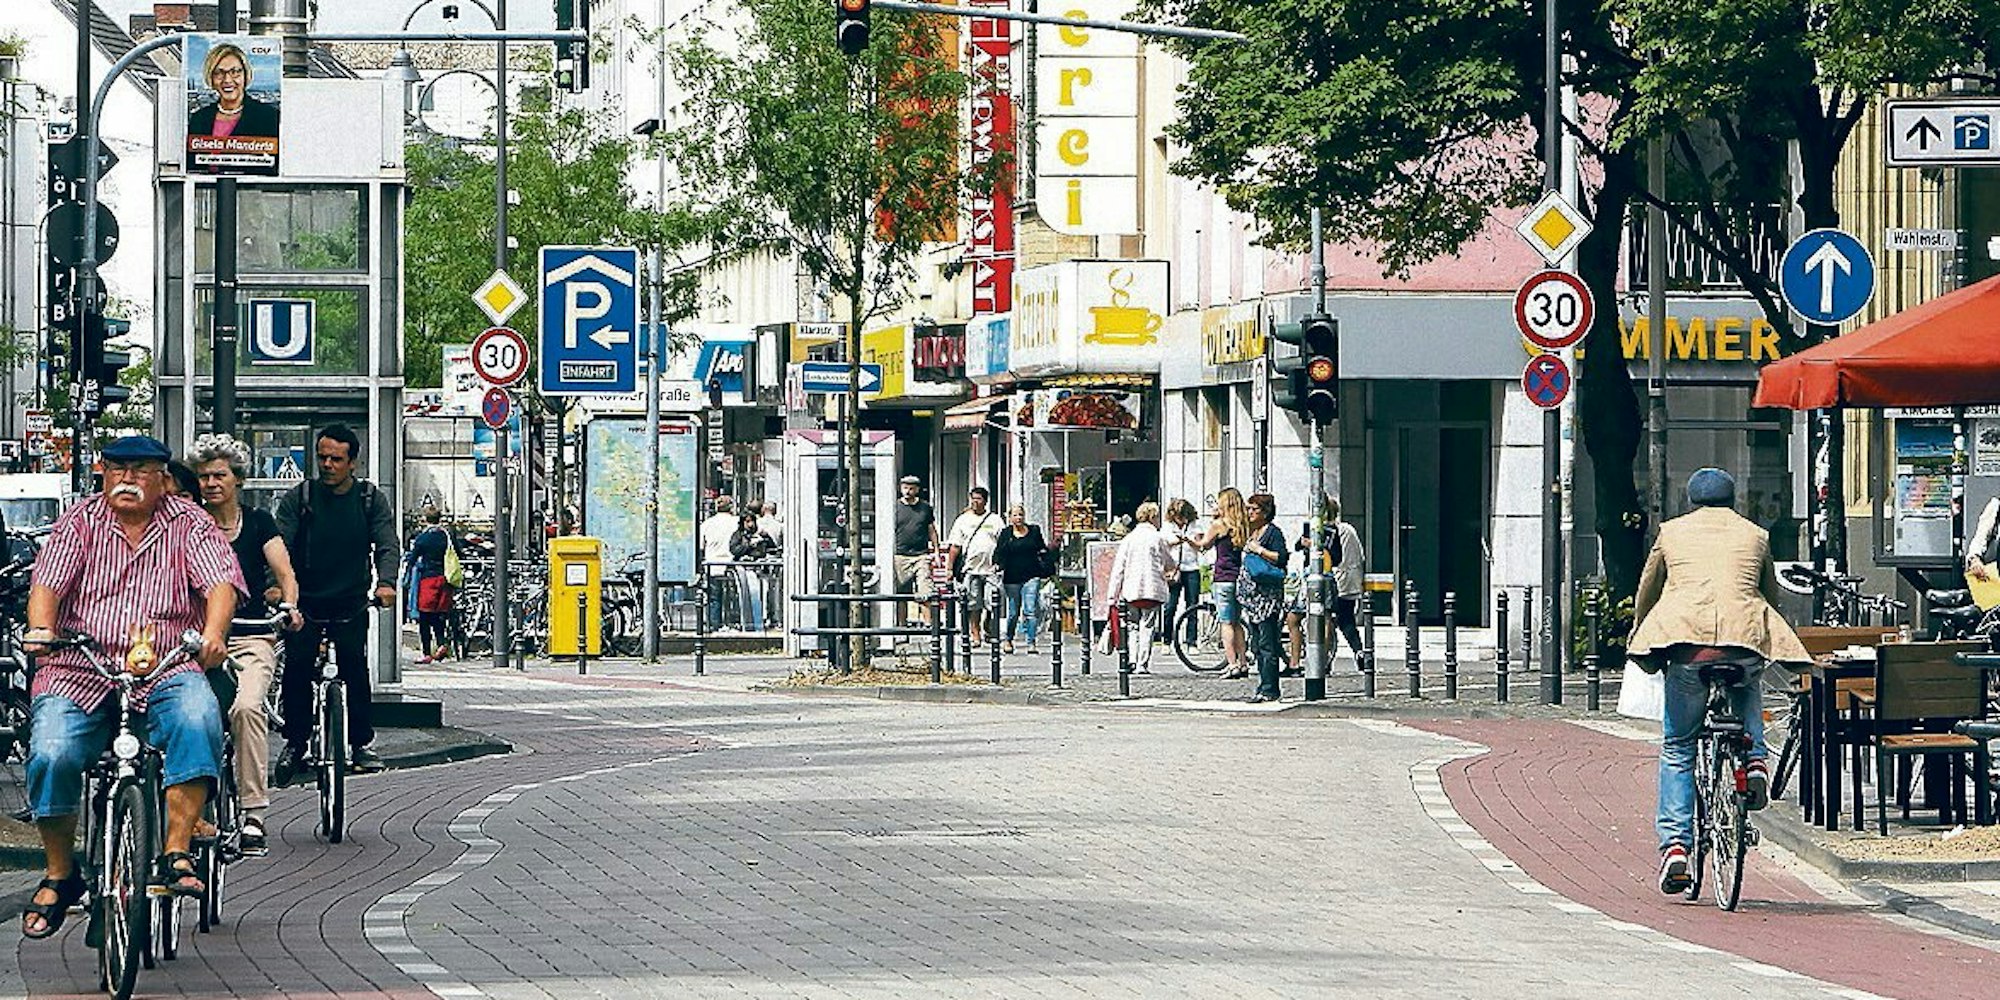 Am 15. September werden die Venloer Straße und fast ganz Ehrenfeld für den Autoverkehr gesperrt sein. Dann dürfen die Radfahrer auch die Straßenmitte benutzen.